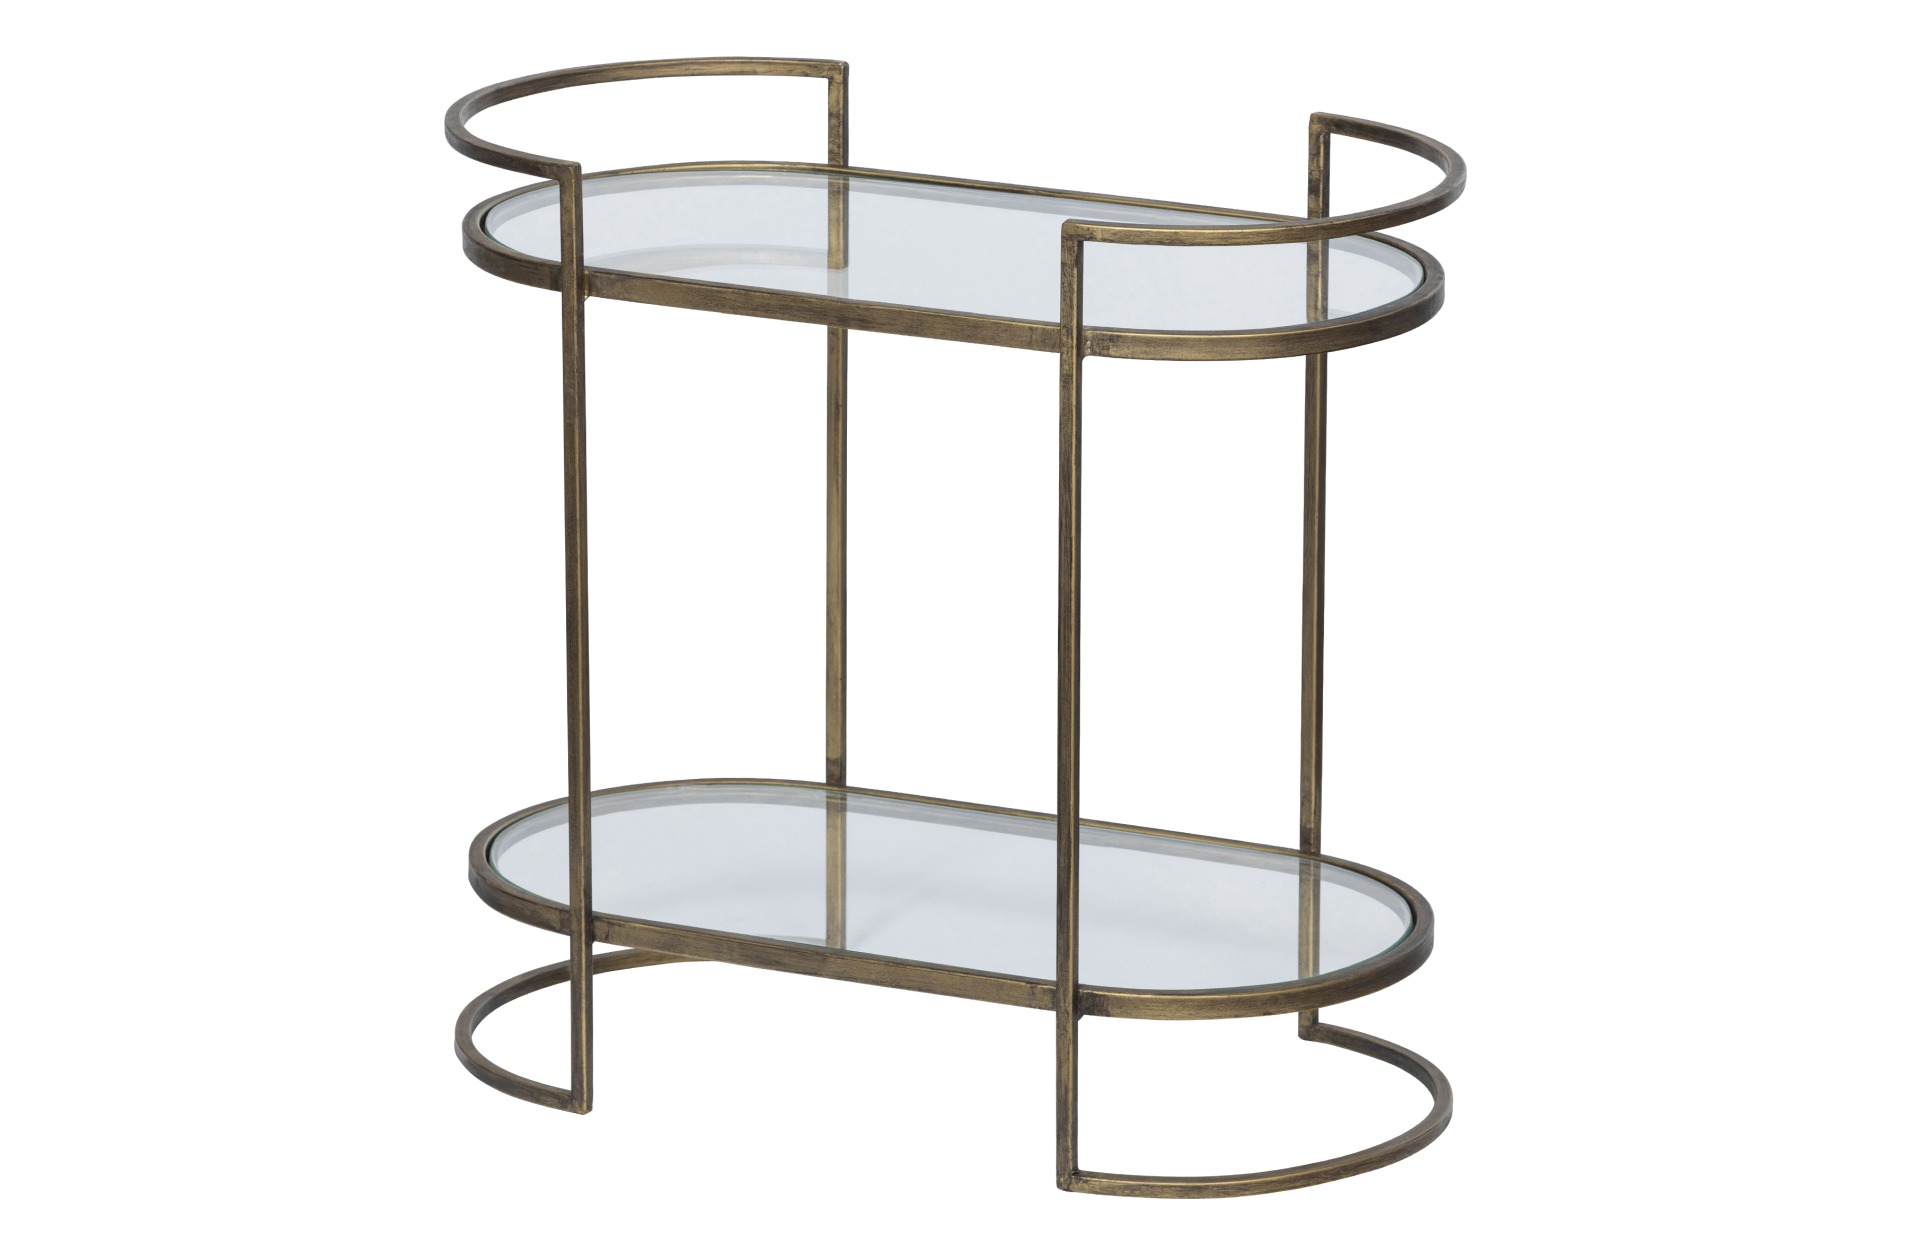 Der Beistelltisch Capital überzeugt mit seinem Klassischem Design. Gefertigt wurde der Tisch aus Metall, welches einen Messing Farbton besitzt. Der Tisch verfügt über zwei Fächer, welche einen Boden aus Glas besitzen.